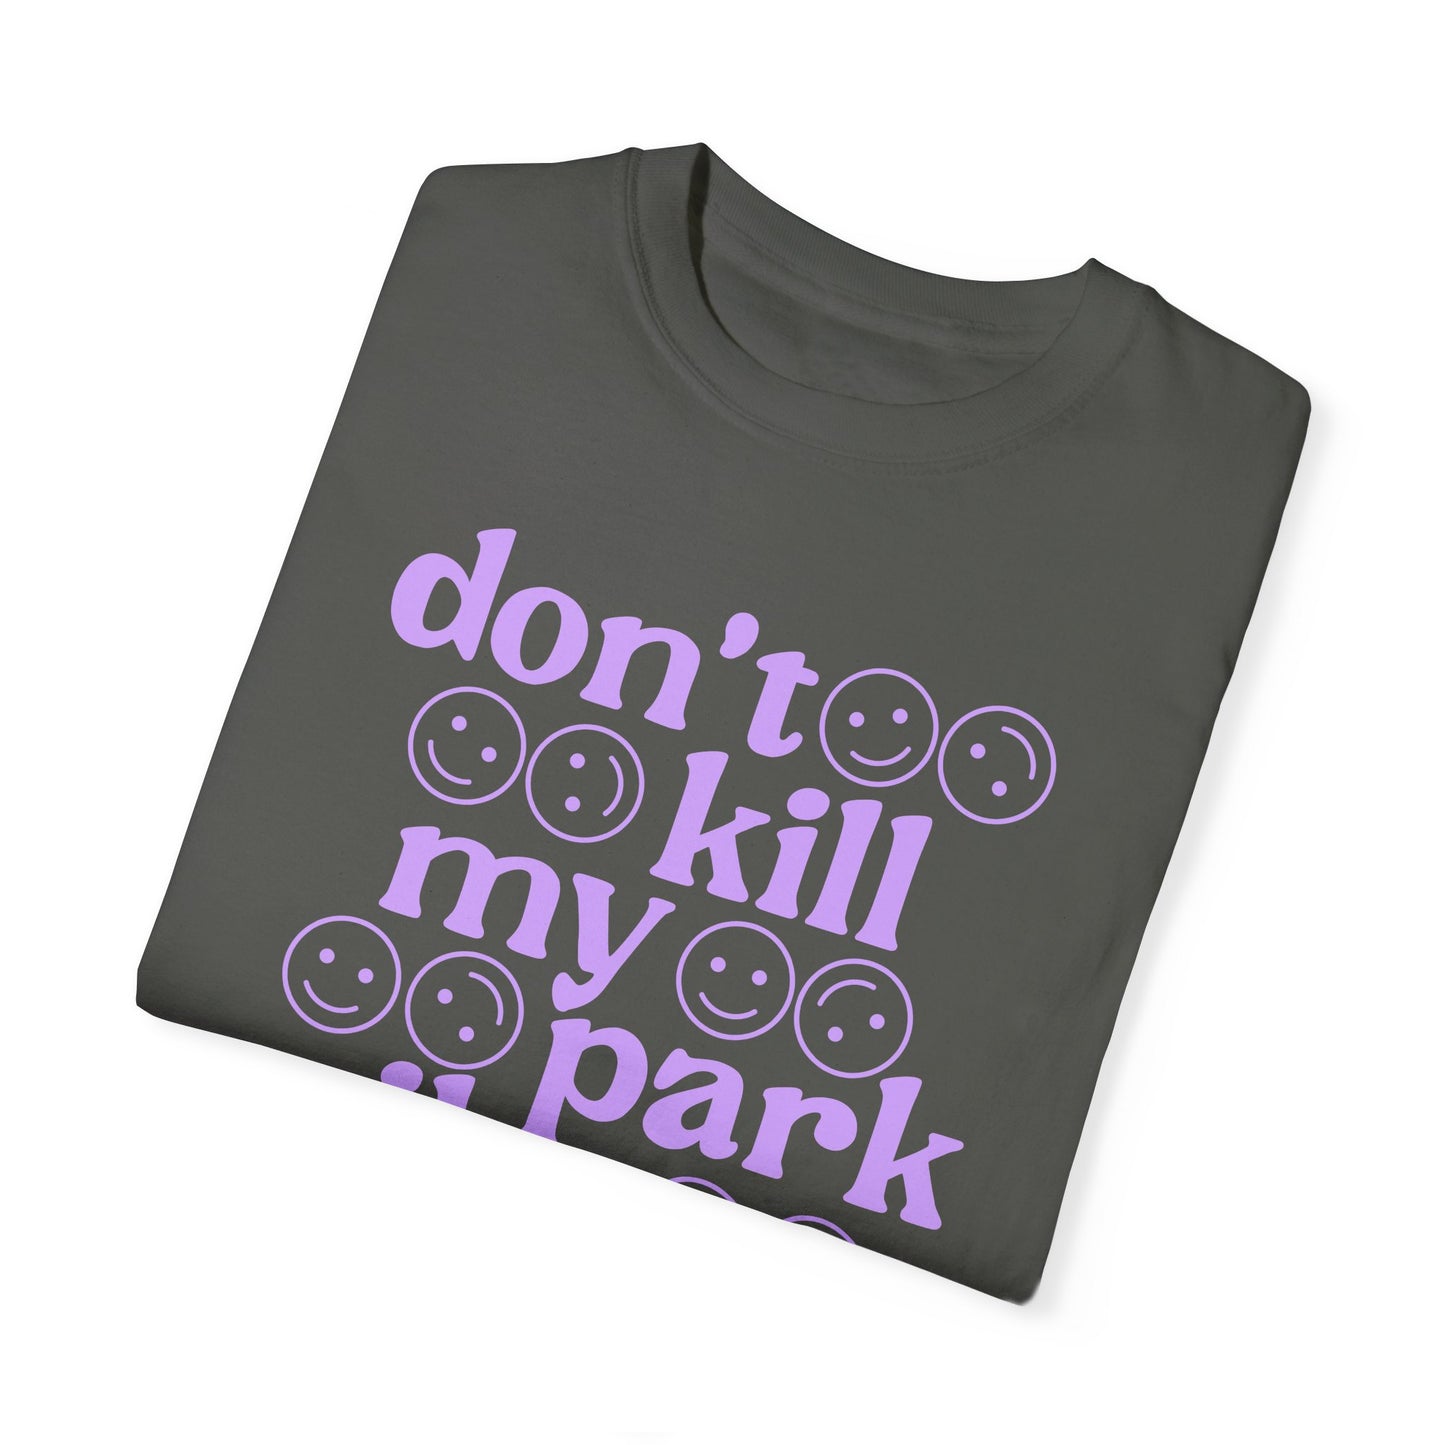 Don't kill my park vibe - Tee